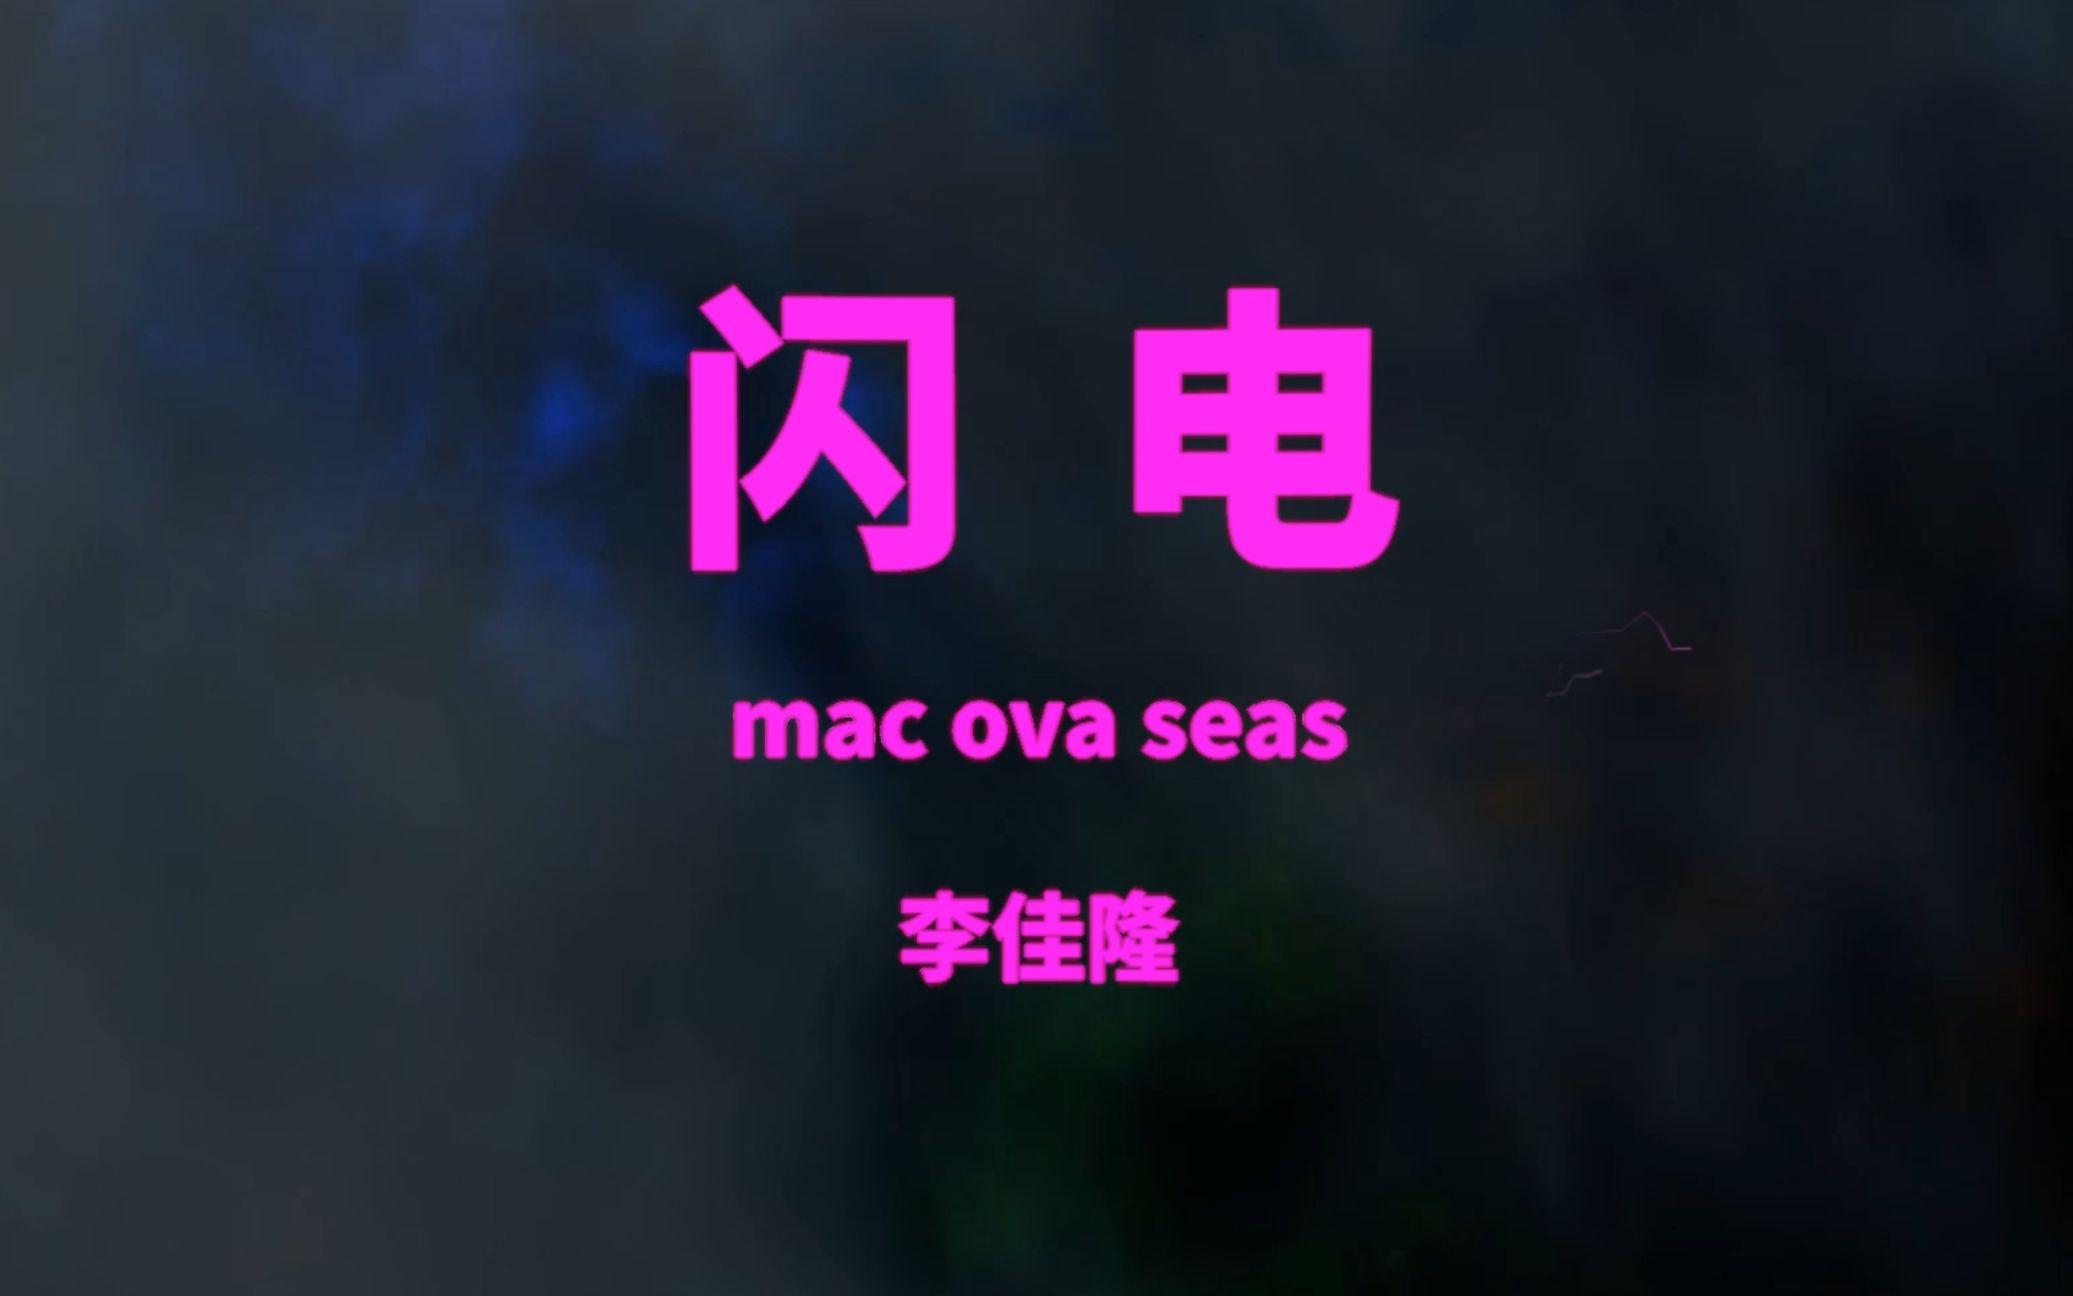 《闪电》-mac ova seas(feat.李佳隆）字幕版MV